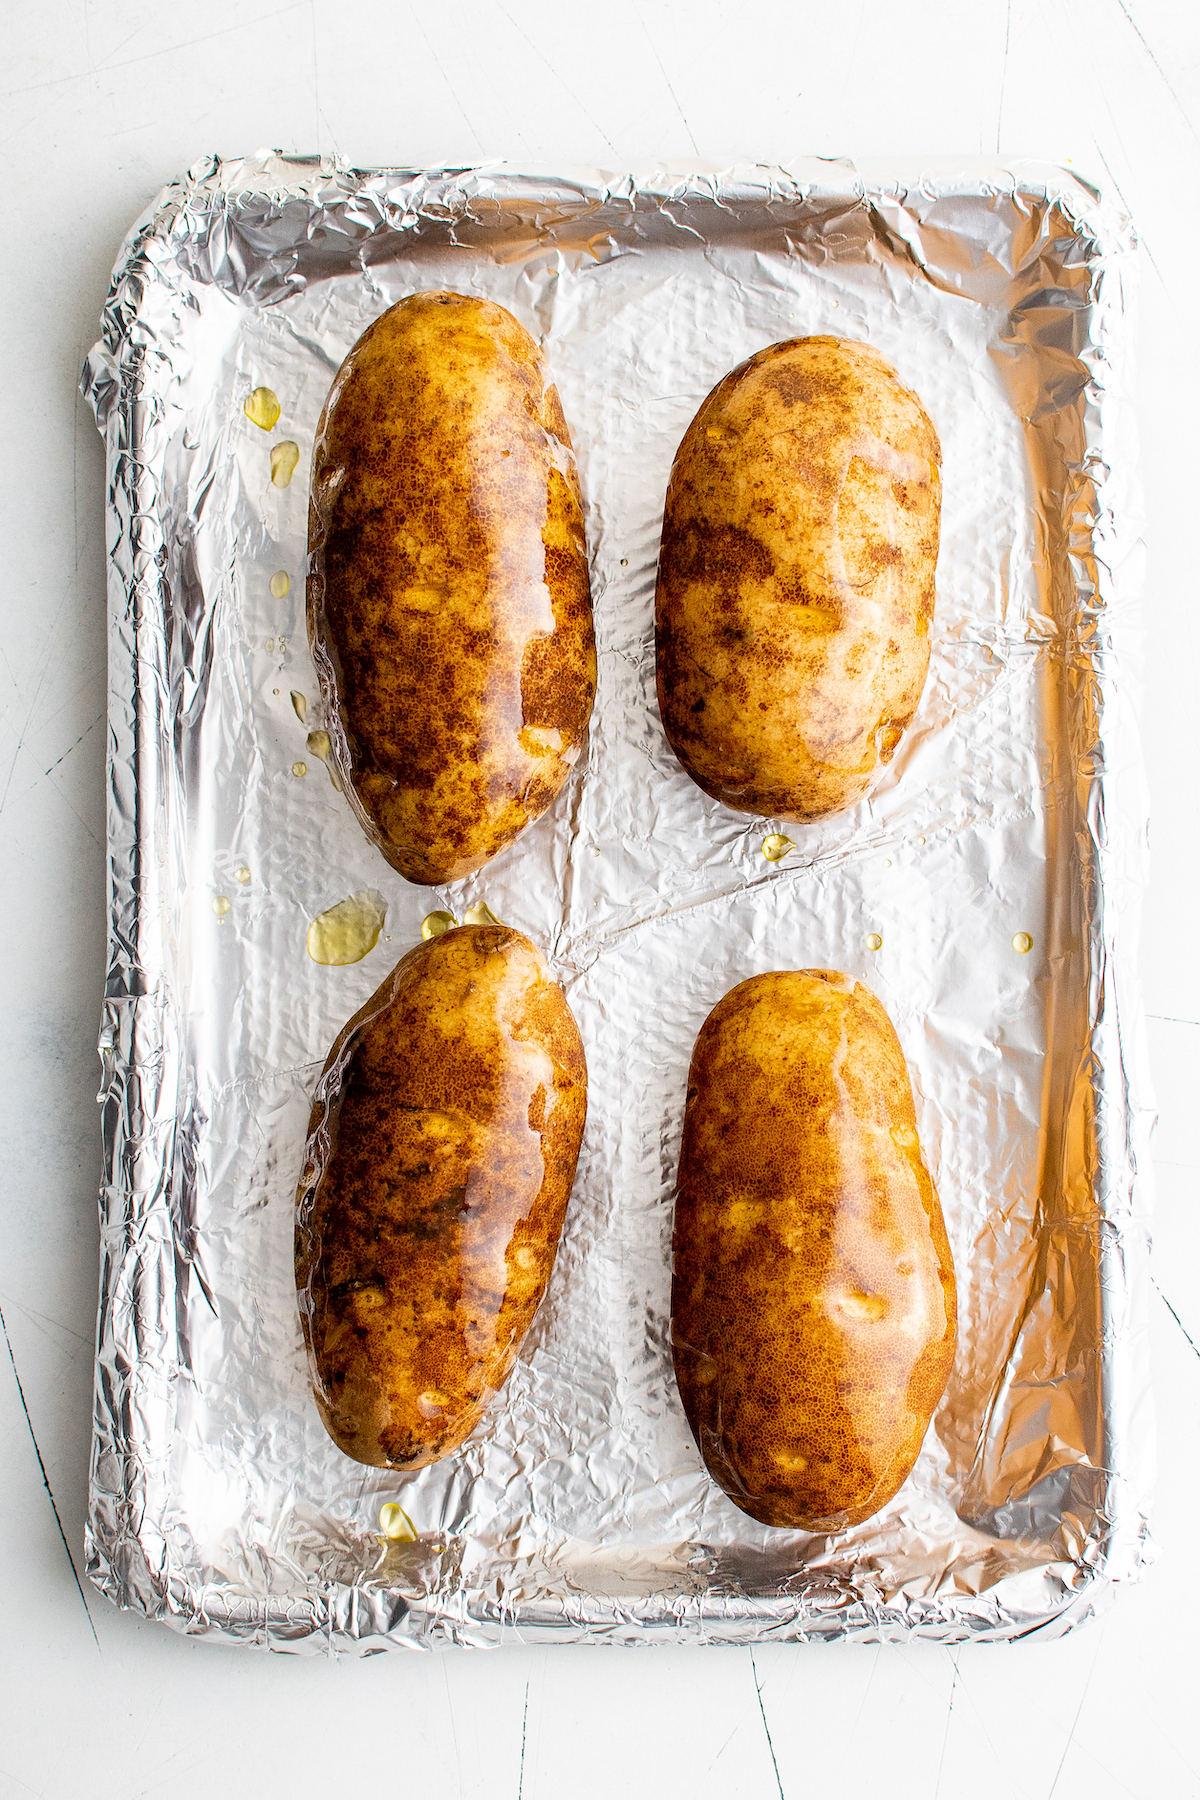 Seasoned, oiled potatoes on a foil-lined baking sheet.